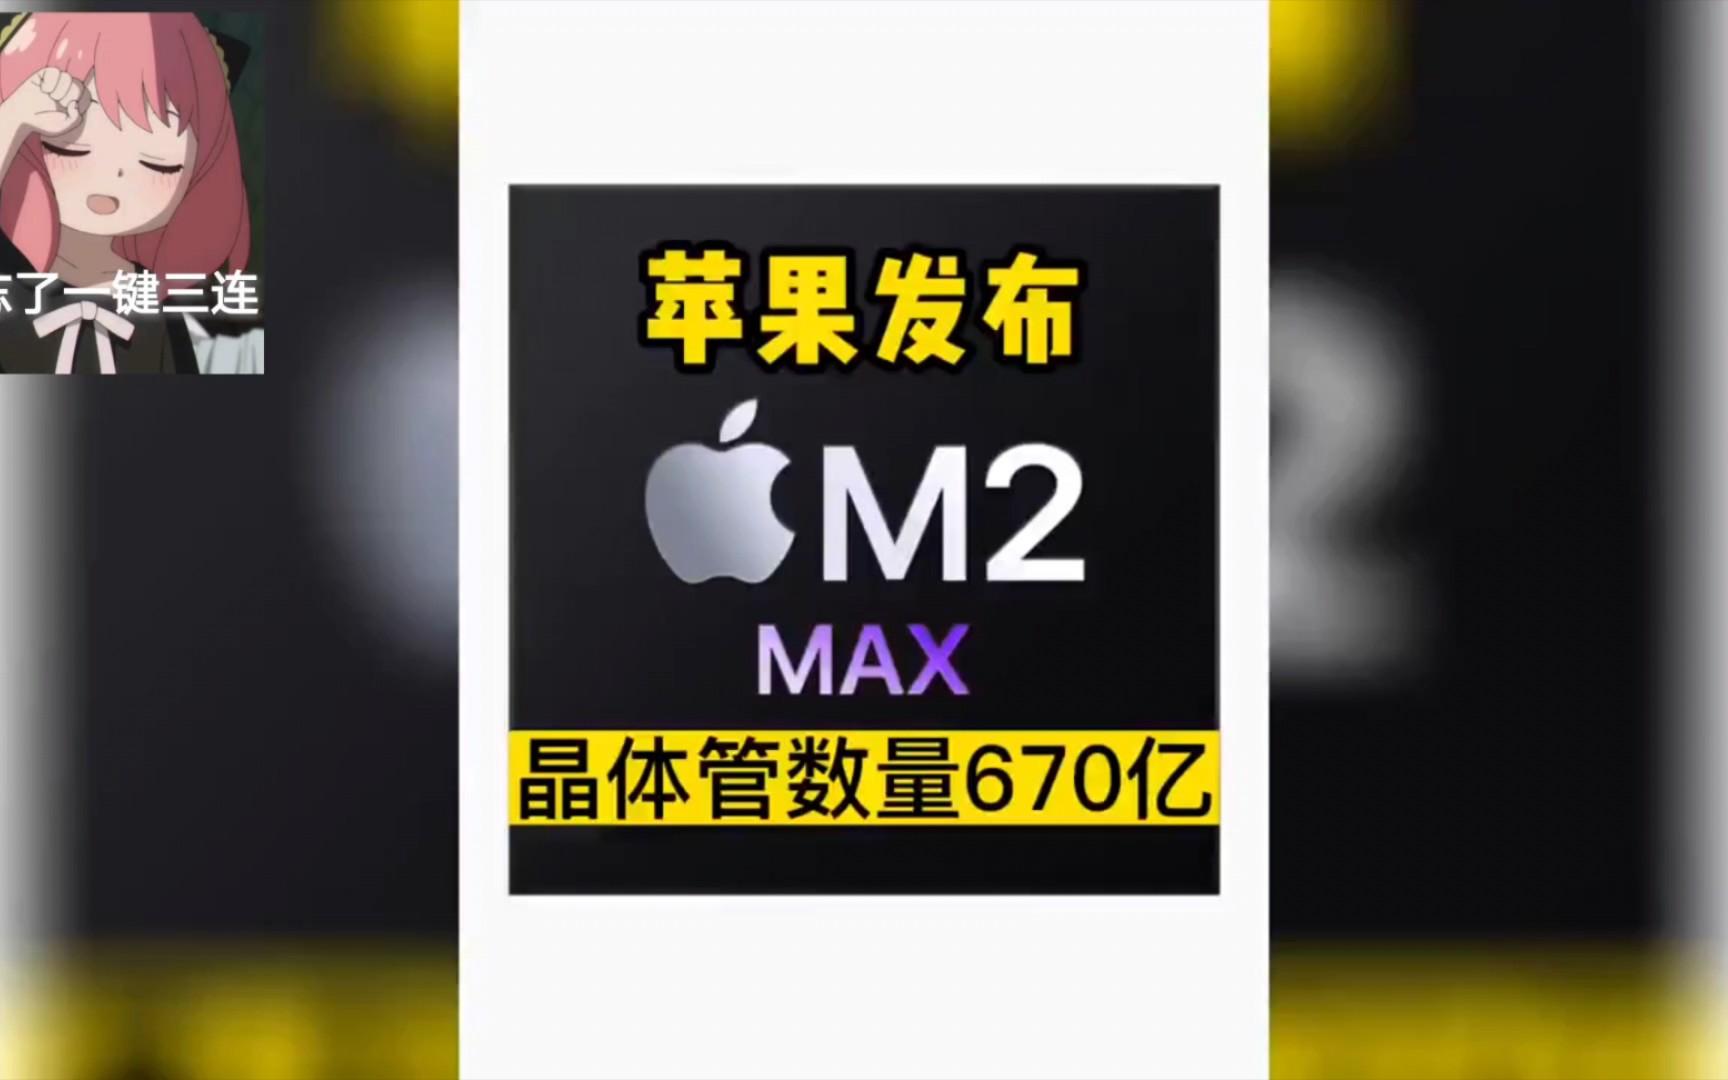 苹果发布M2 Pro和M2 Max 芯片，晶体管数量达到惊人的670亿 #数码科技 #苹果 #芯片